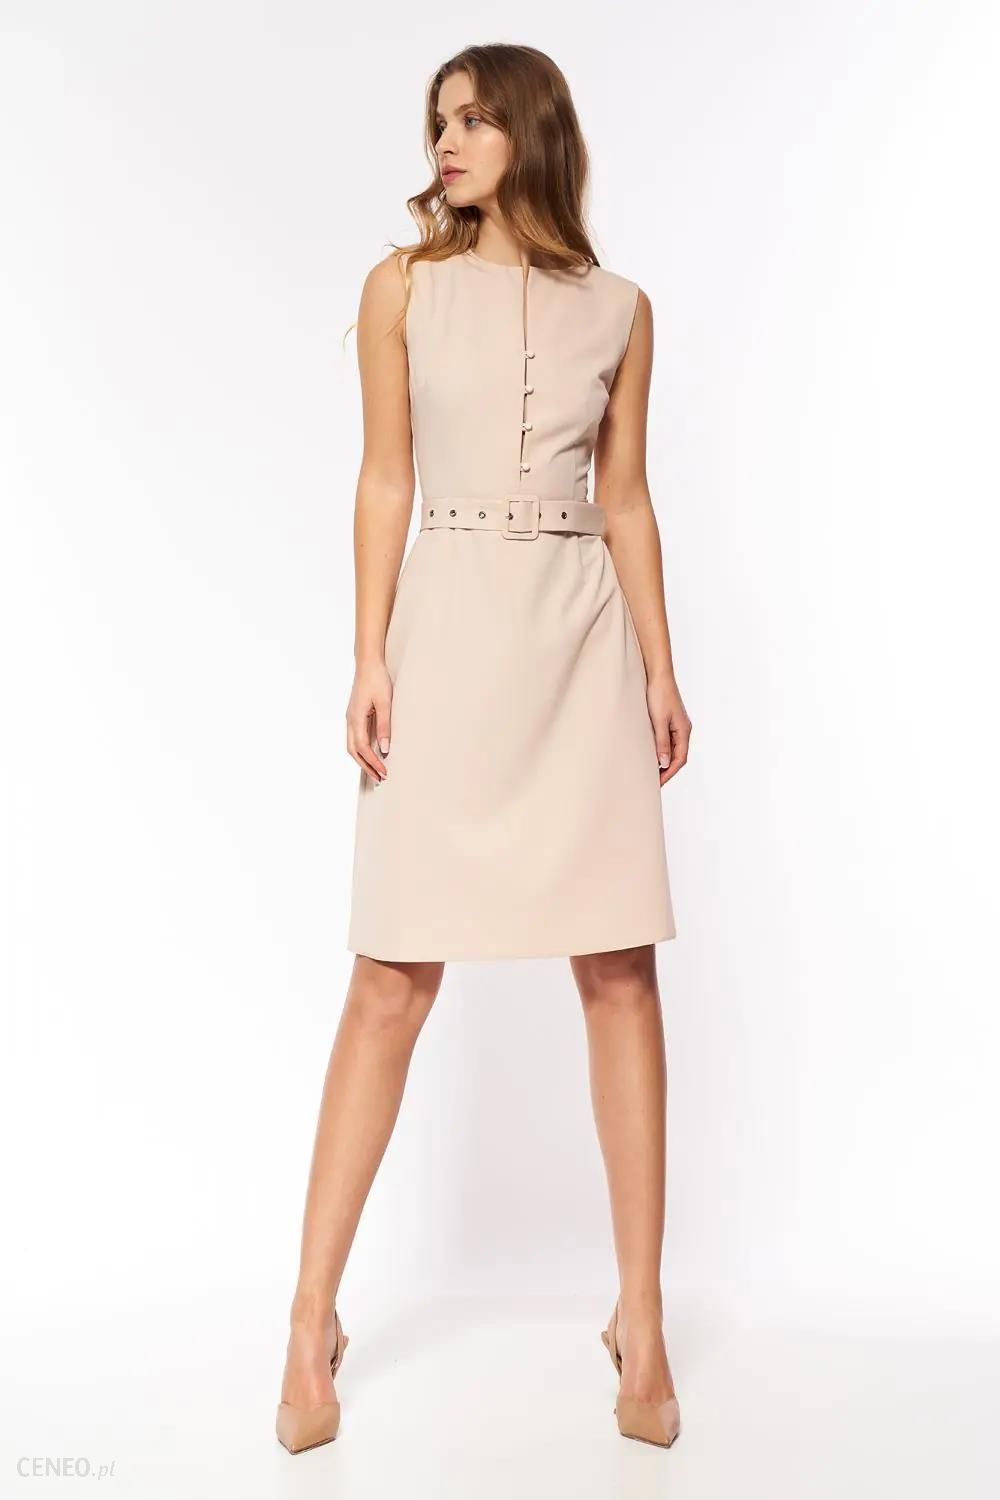 Beżowa elegancka sukienka bez rękawów - S200 (Kolor beżowy, Rozmiar S (36))  - Ceny i opinie 